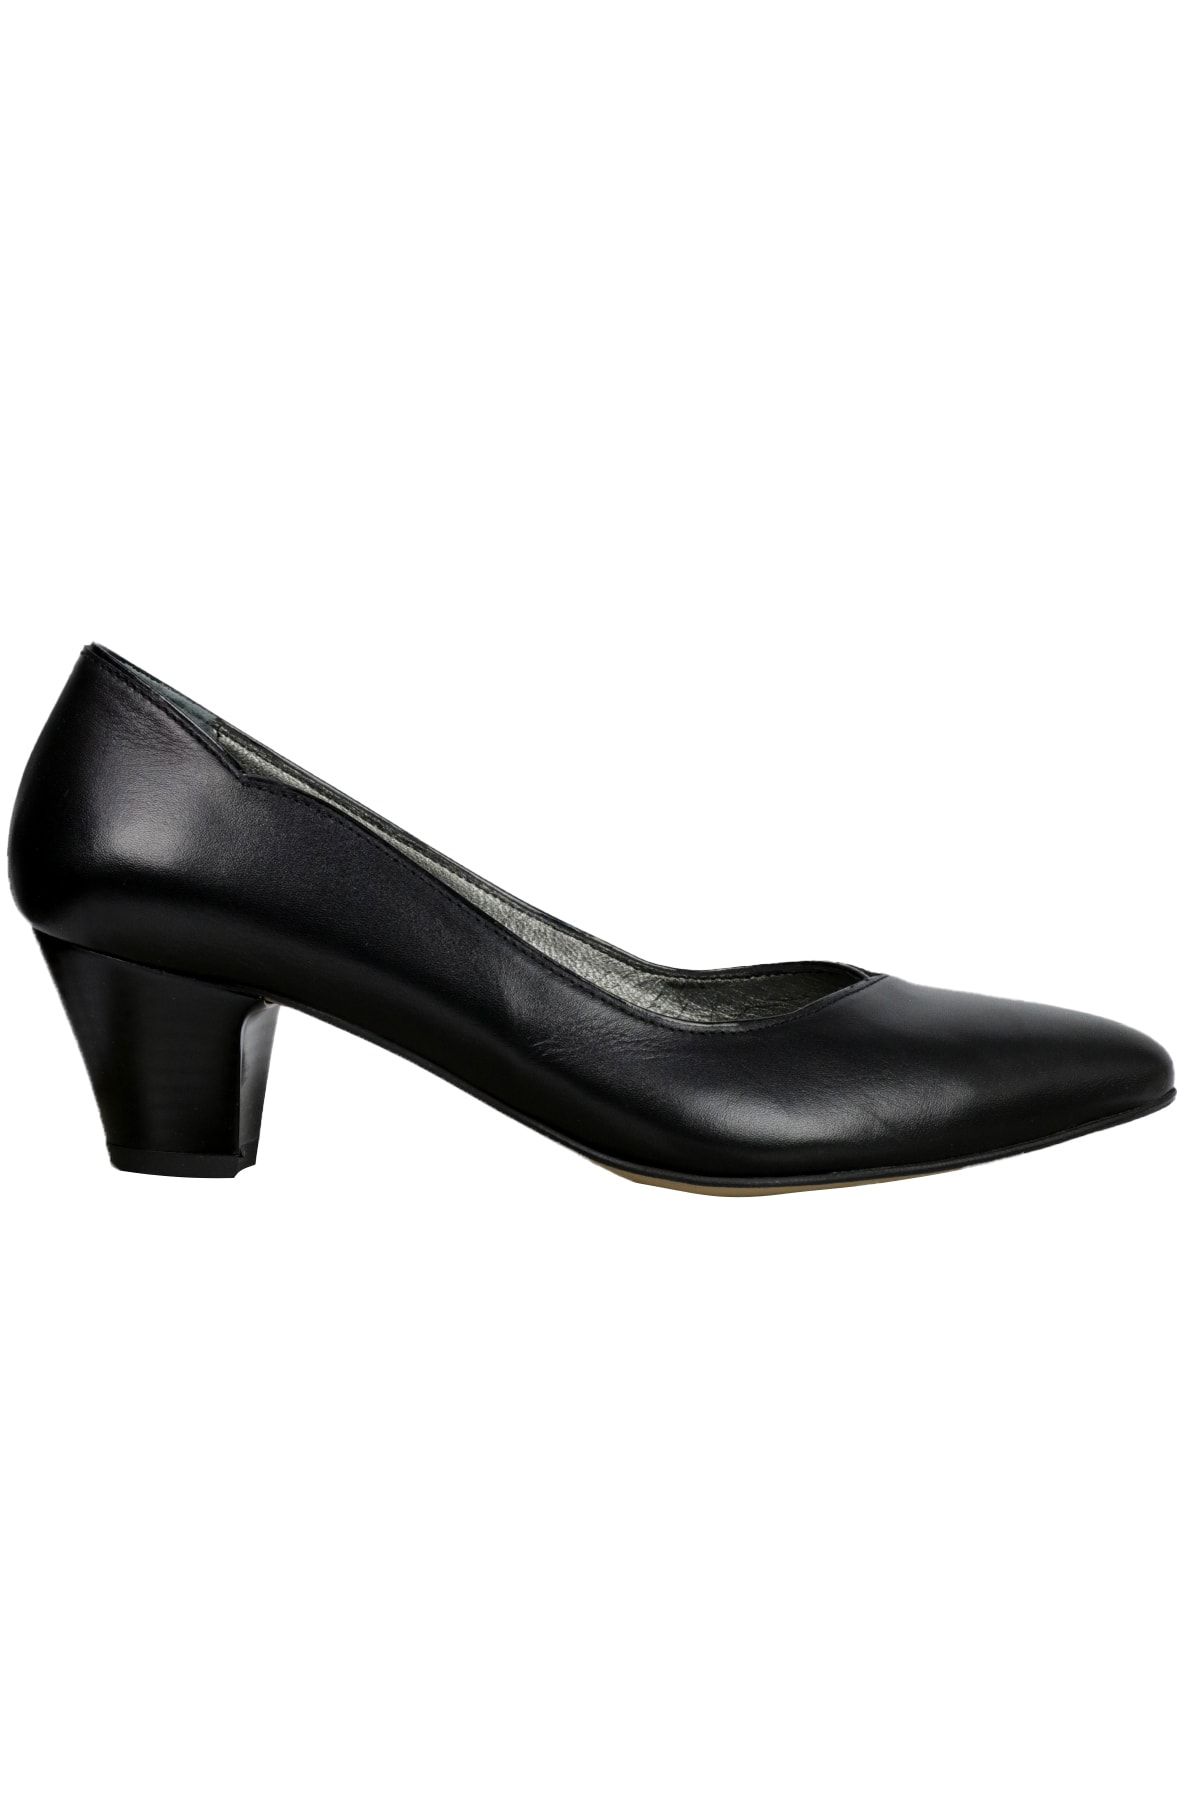 OZ DOROTHY Kadın Siyah Topuklu Ayakkabı